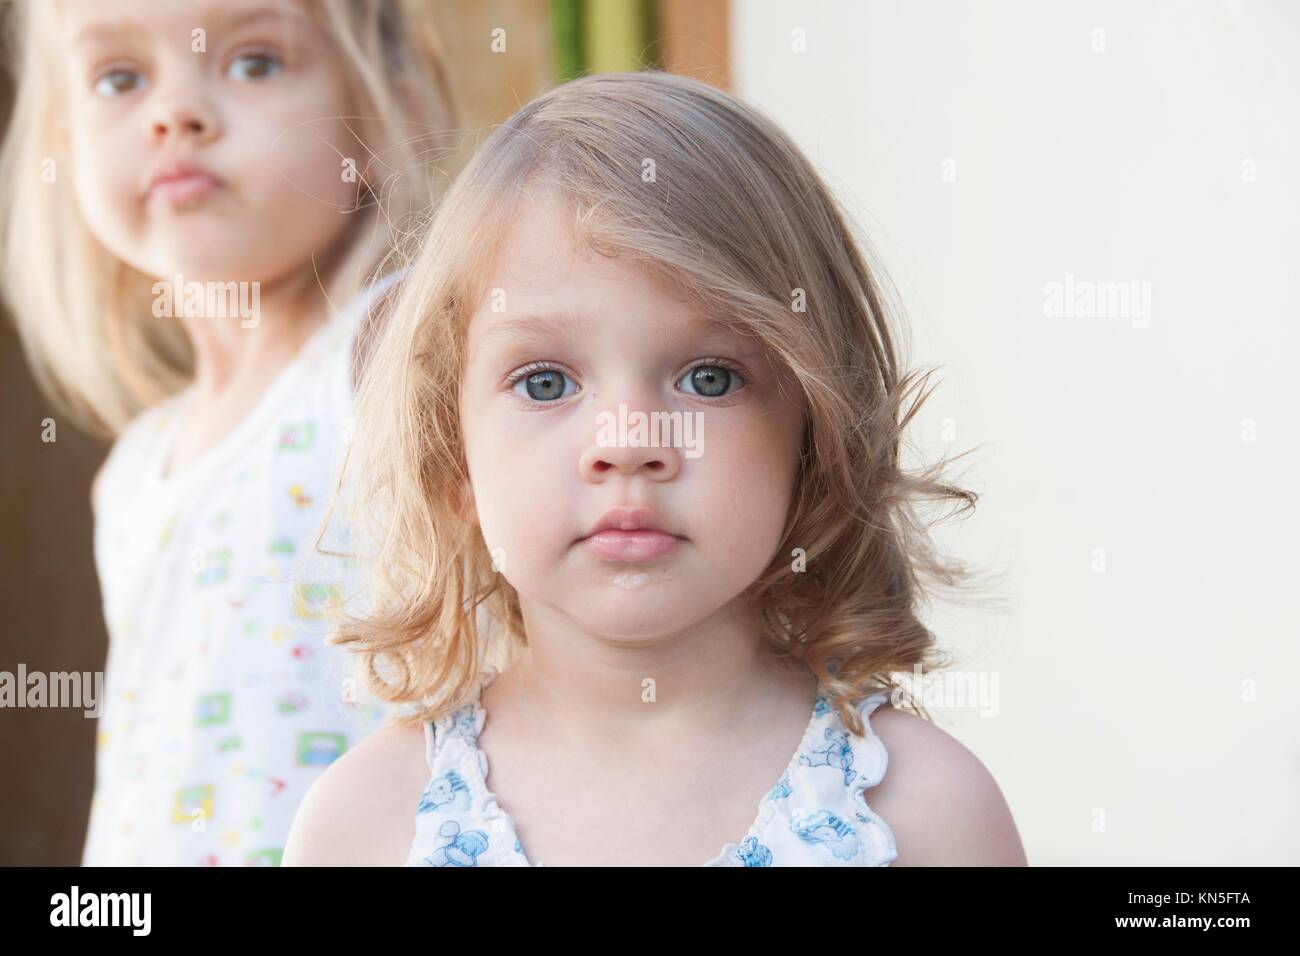 retrato de dos niñas: niña de cuatro años en el fondo, dos